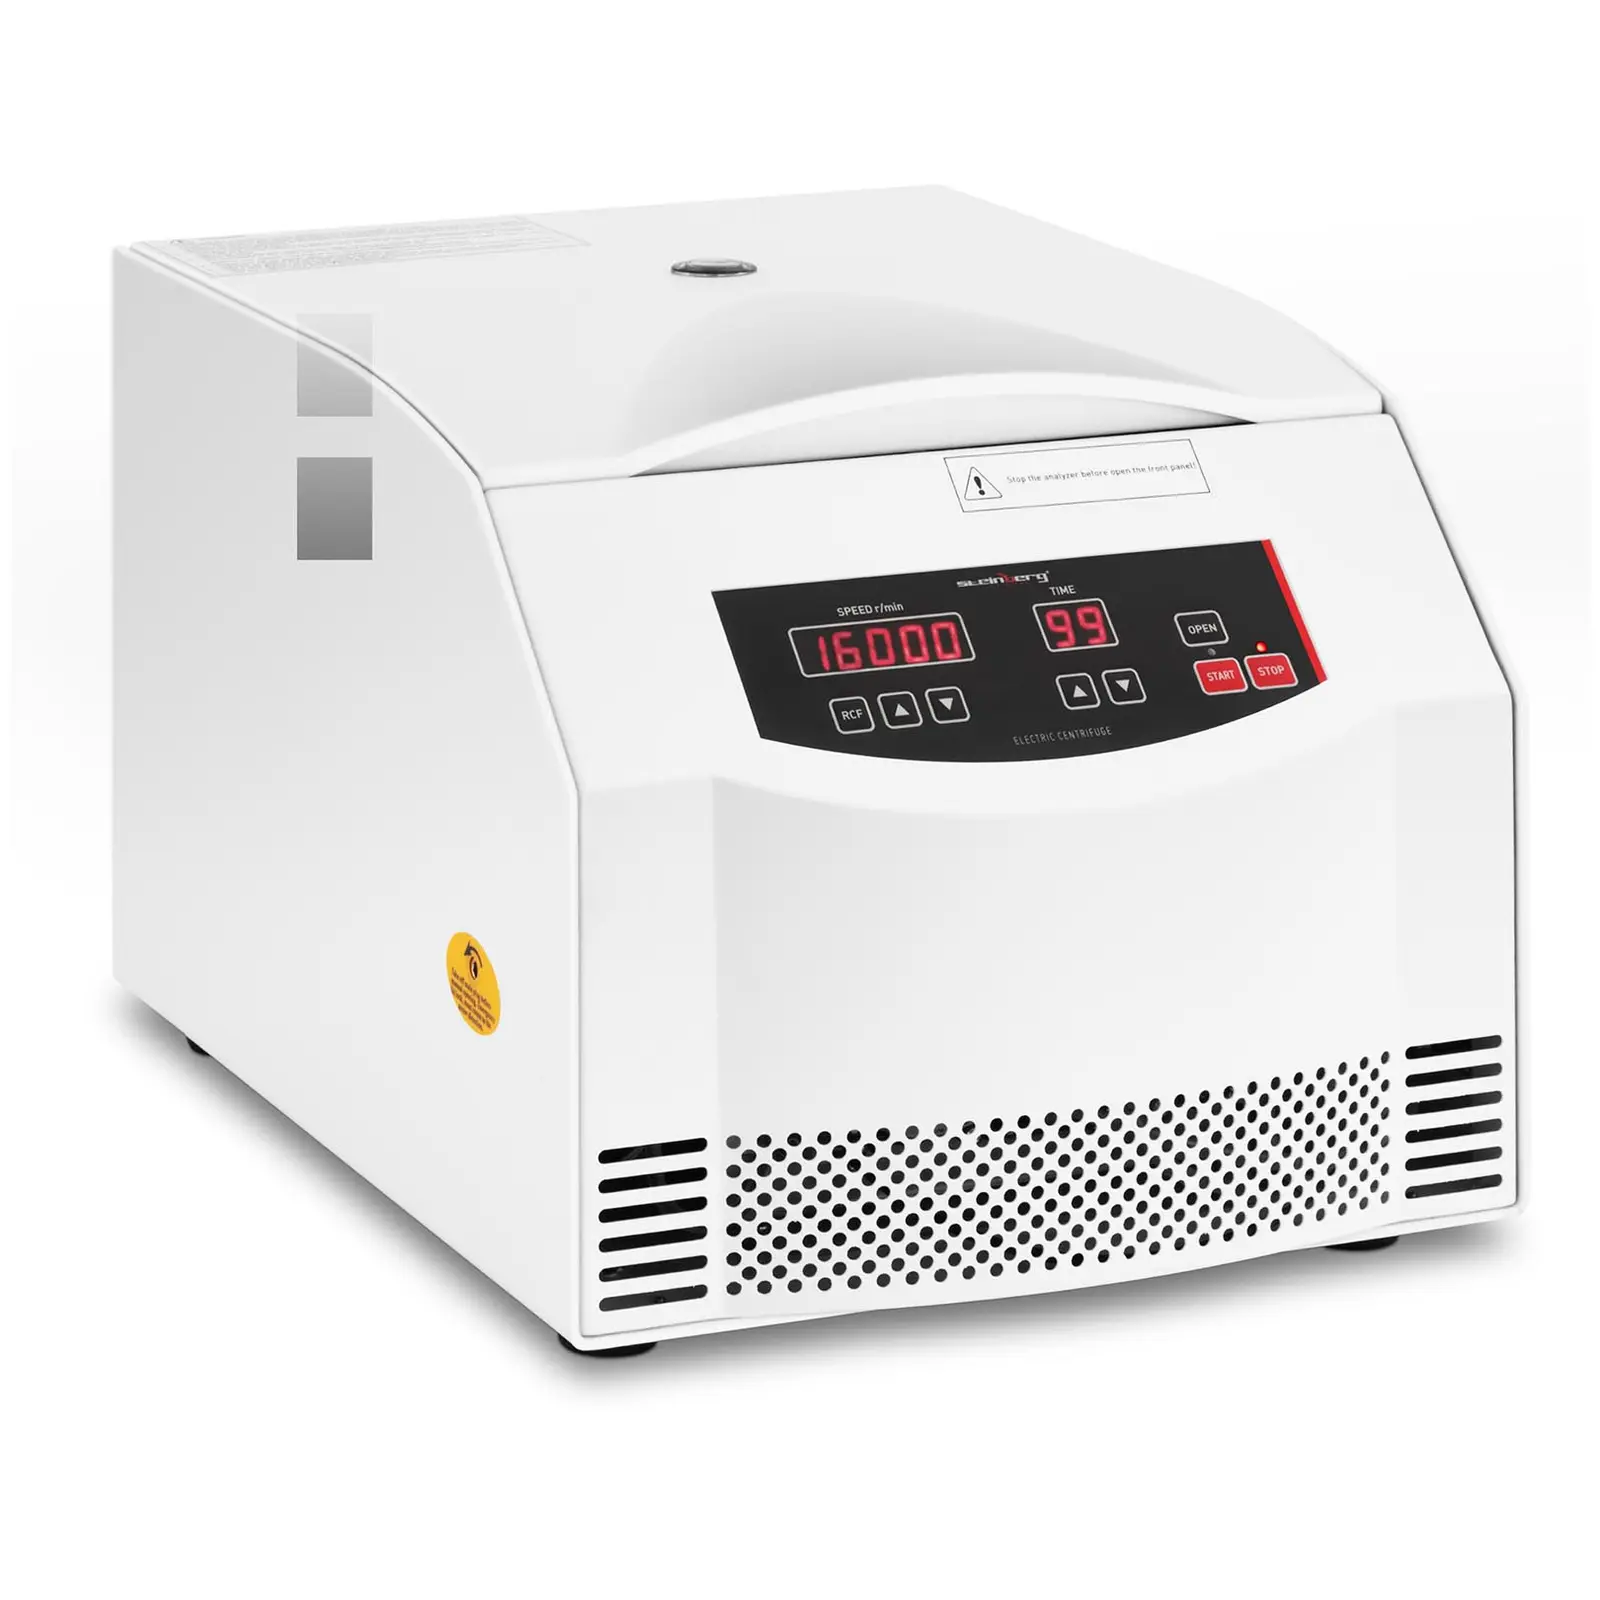 Centrifugeuse laboratoire - 4 barrettes de 8 tubes PCR de 0,2 ml - FCR 20 600 xg